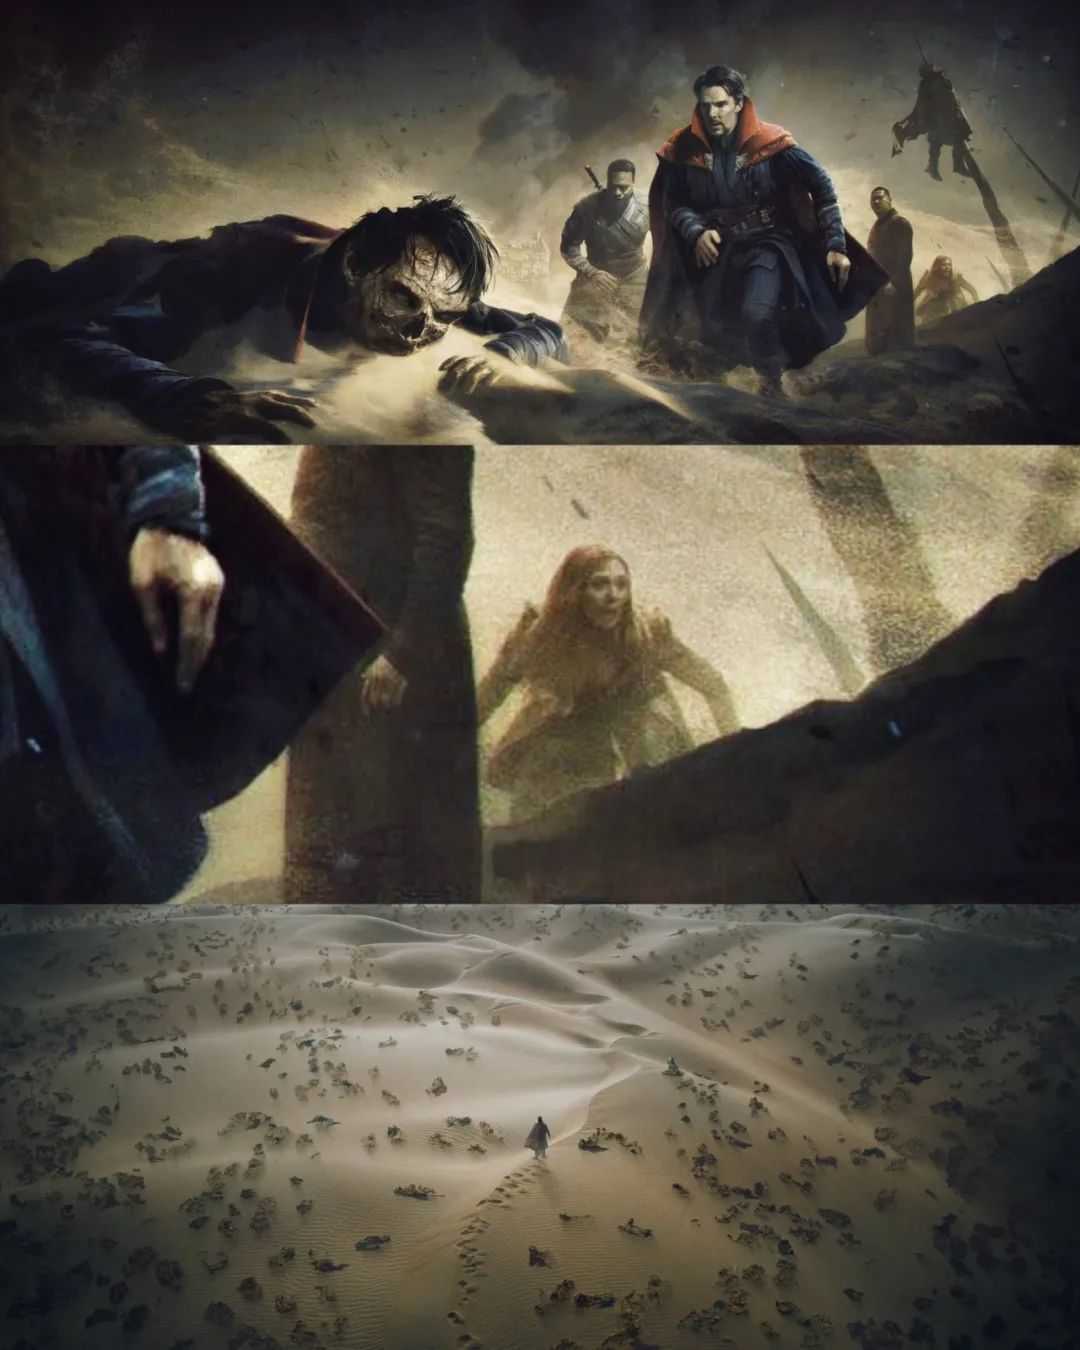 《奇异博士2》公开的原稿显示平行宇宙所有奇异博士都死了，场面太惨烈...-插图